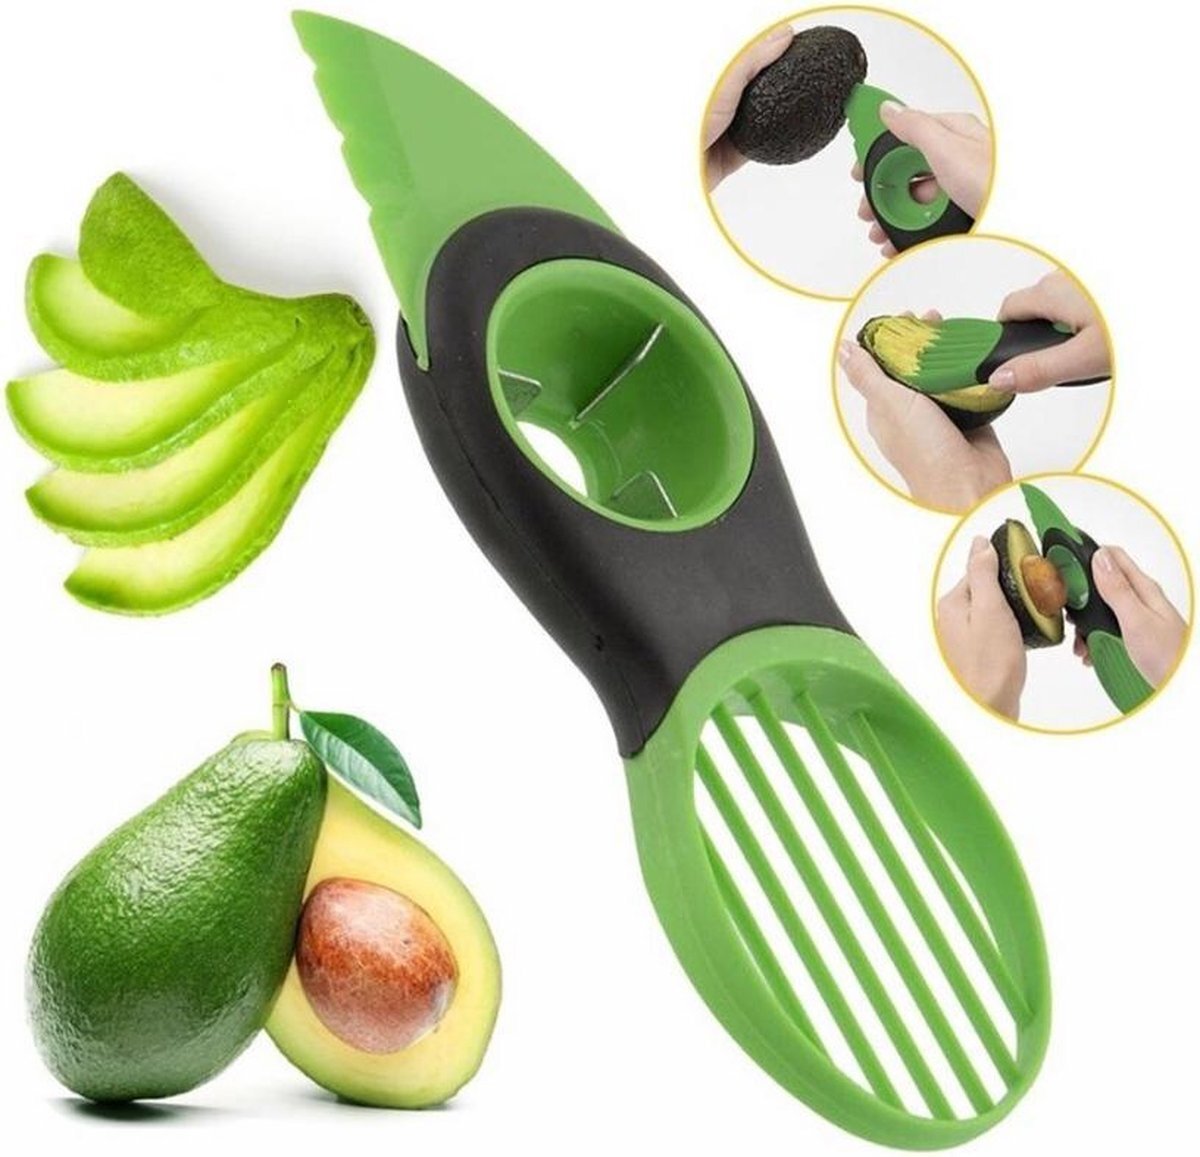 All-In-One Avocado Slicer